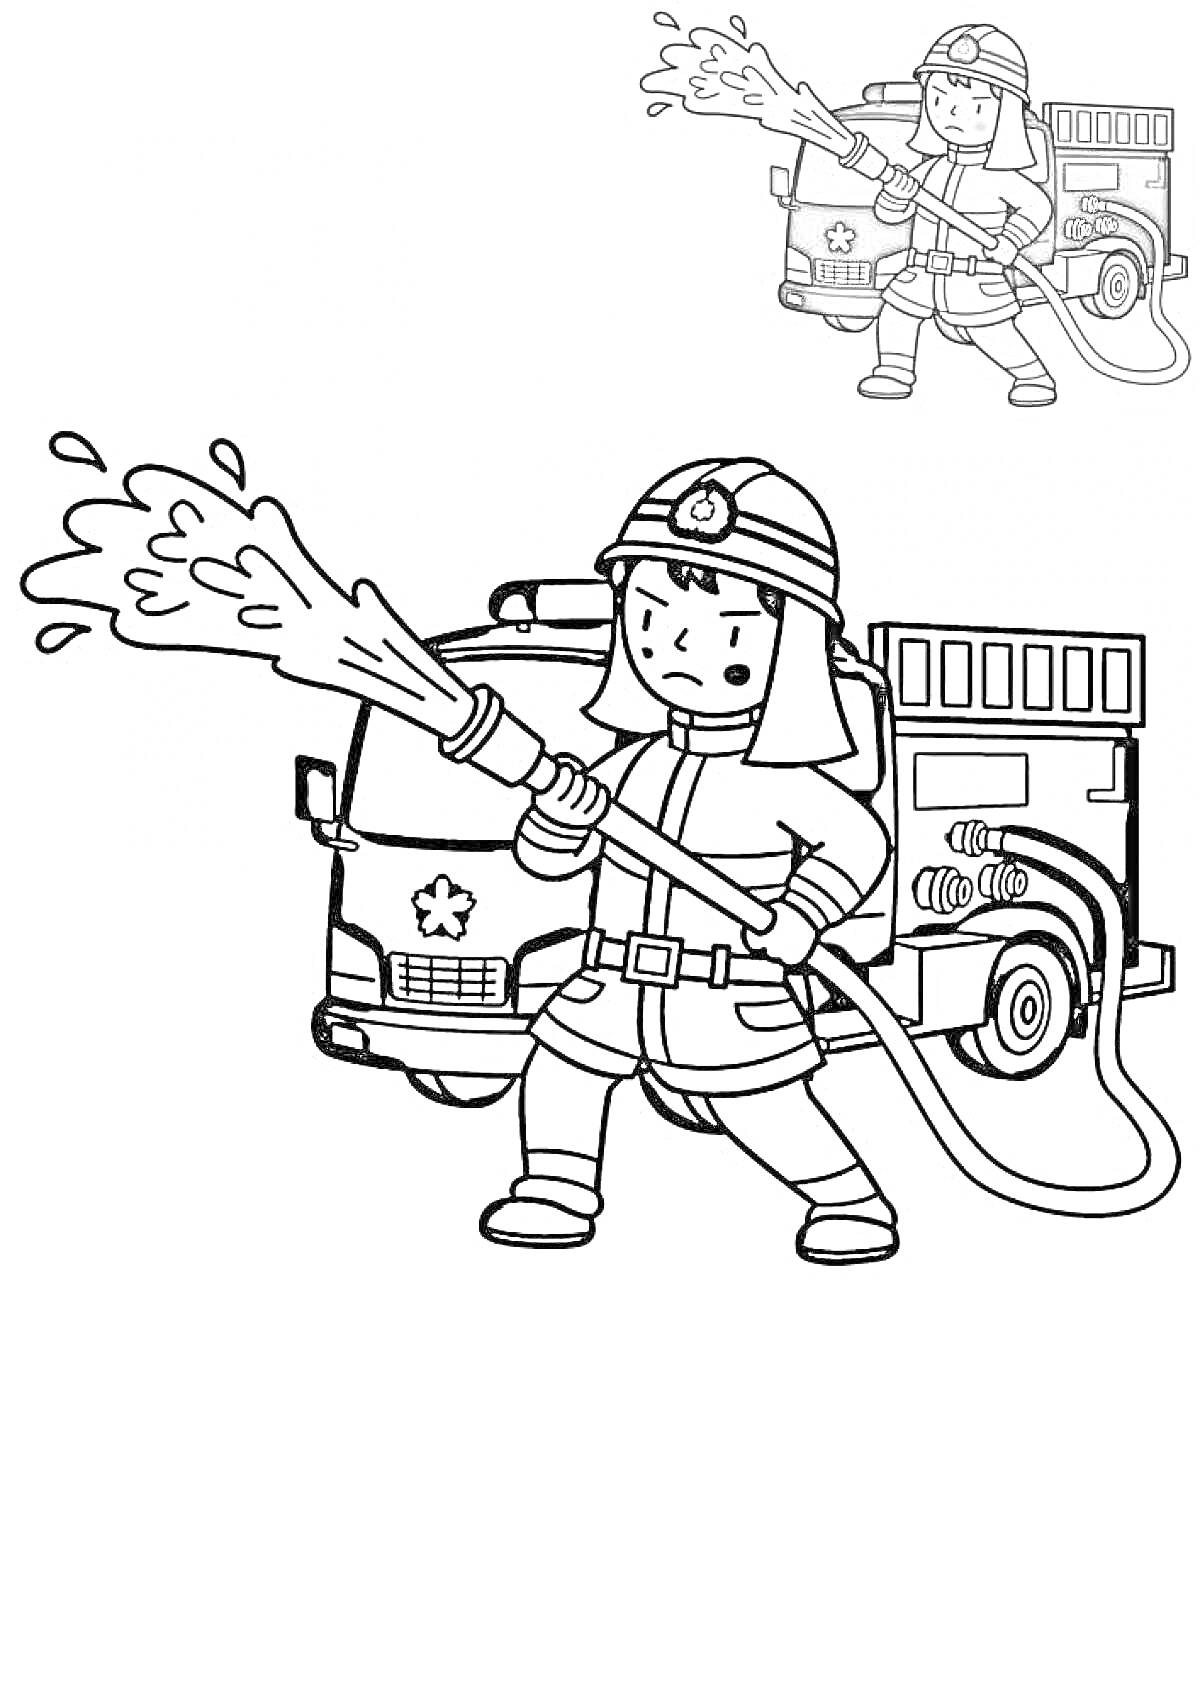 Раскраска Пожарный тушит огонь из пожарного шланга перед пожарной машиной